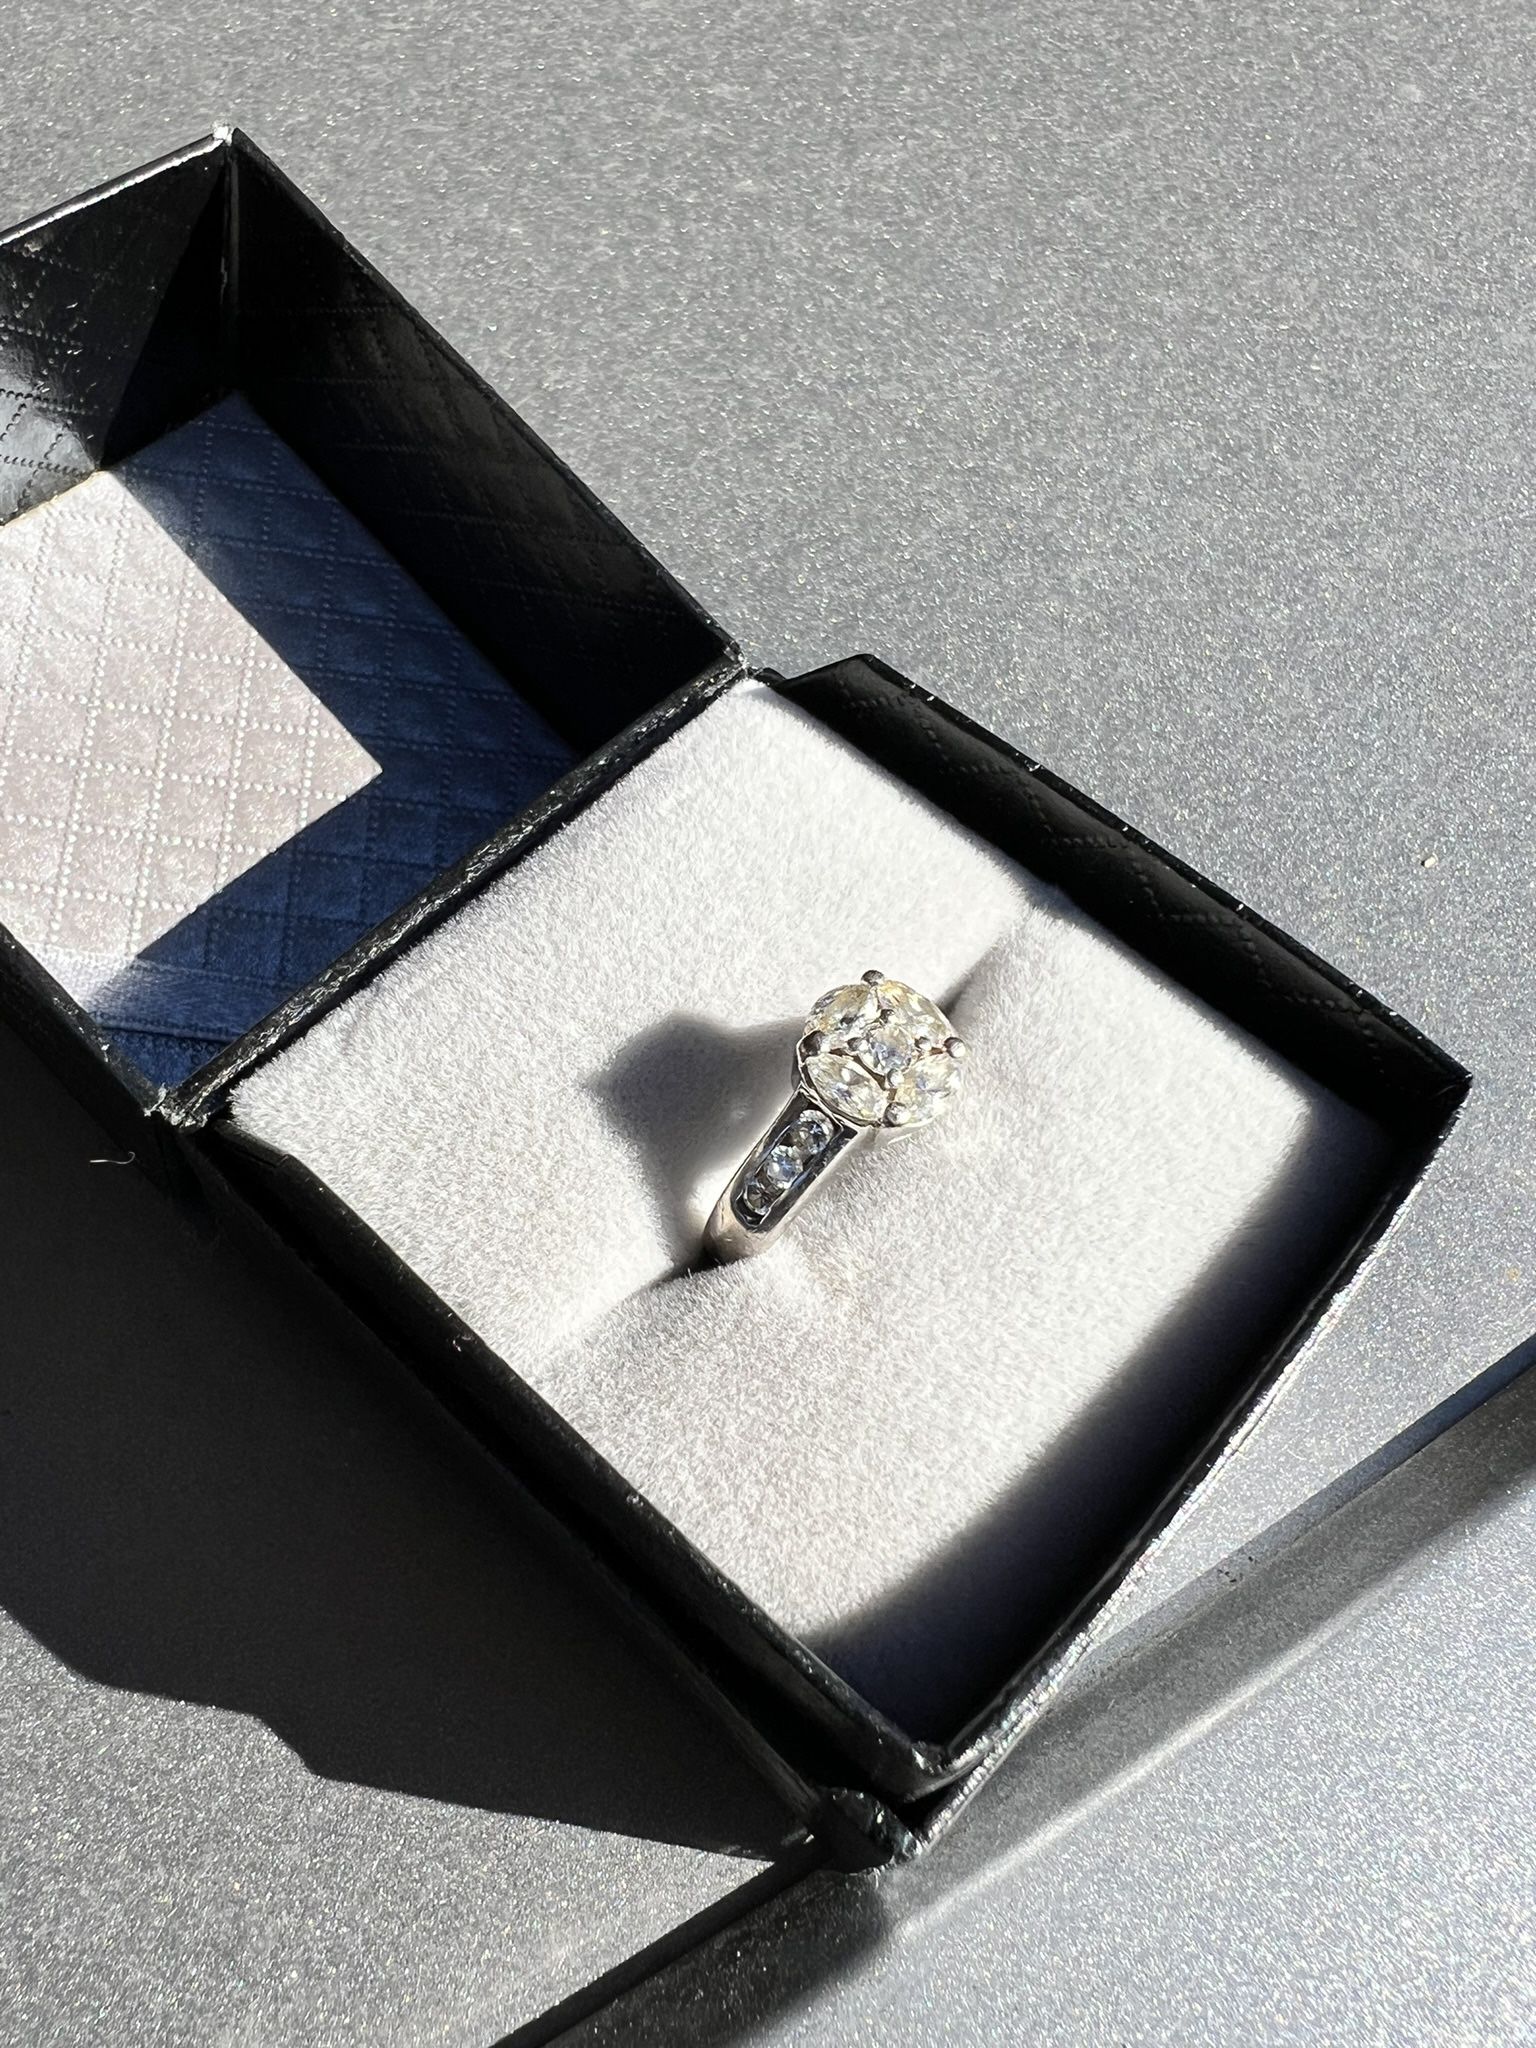 14kt Diamond Ring $600 OBO